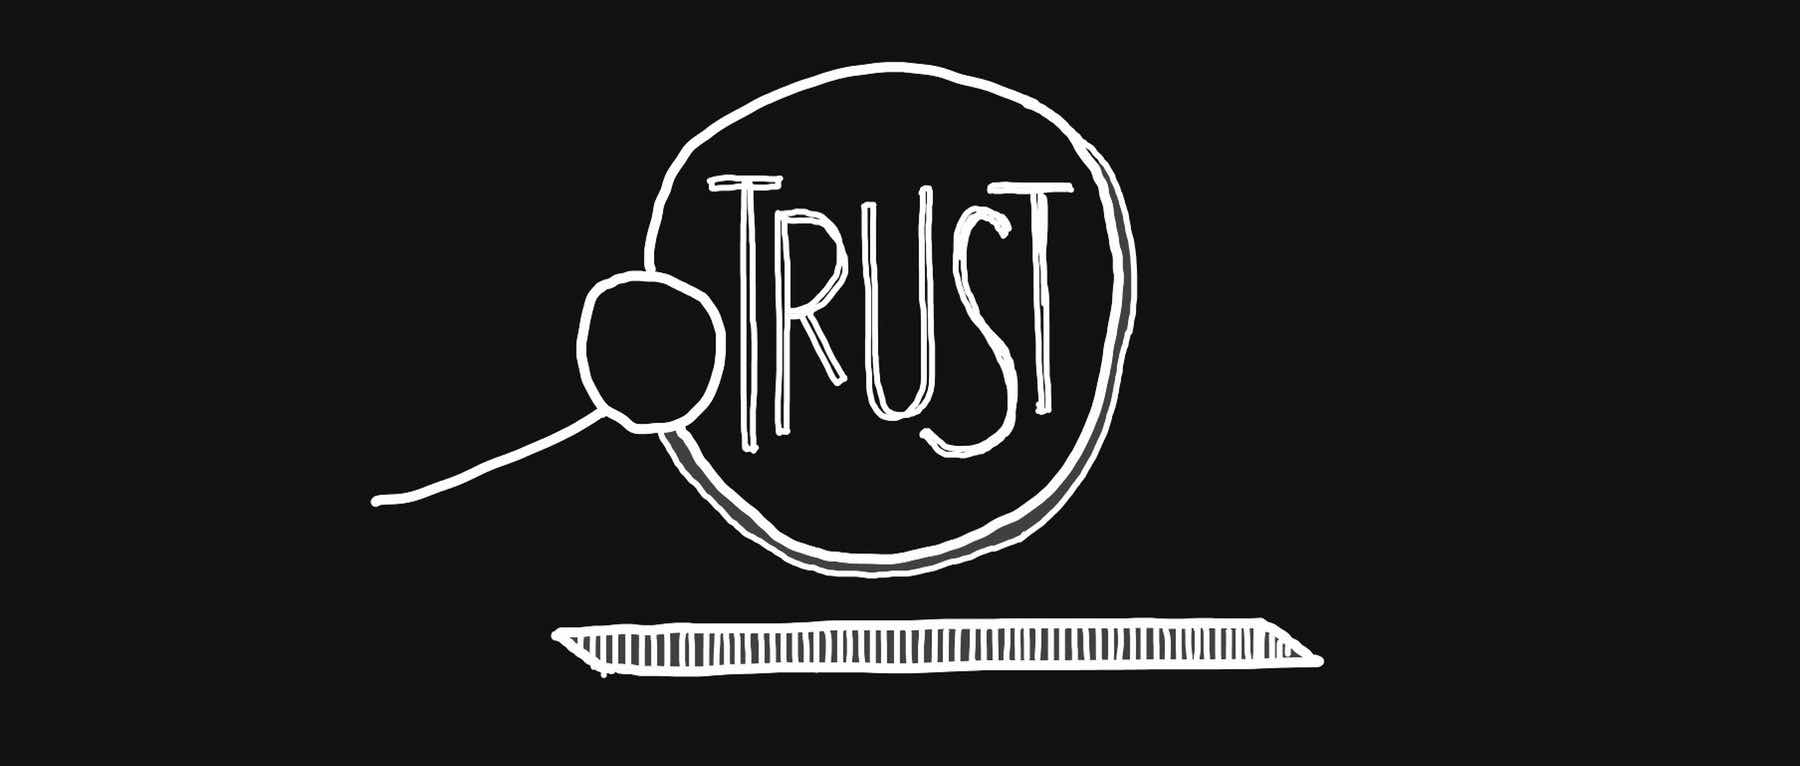 🛡 Leading through trust